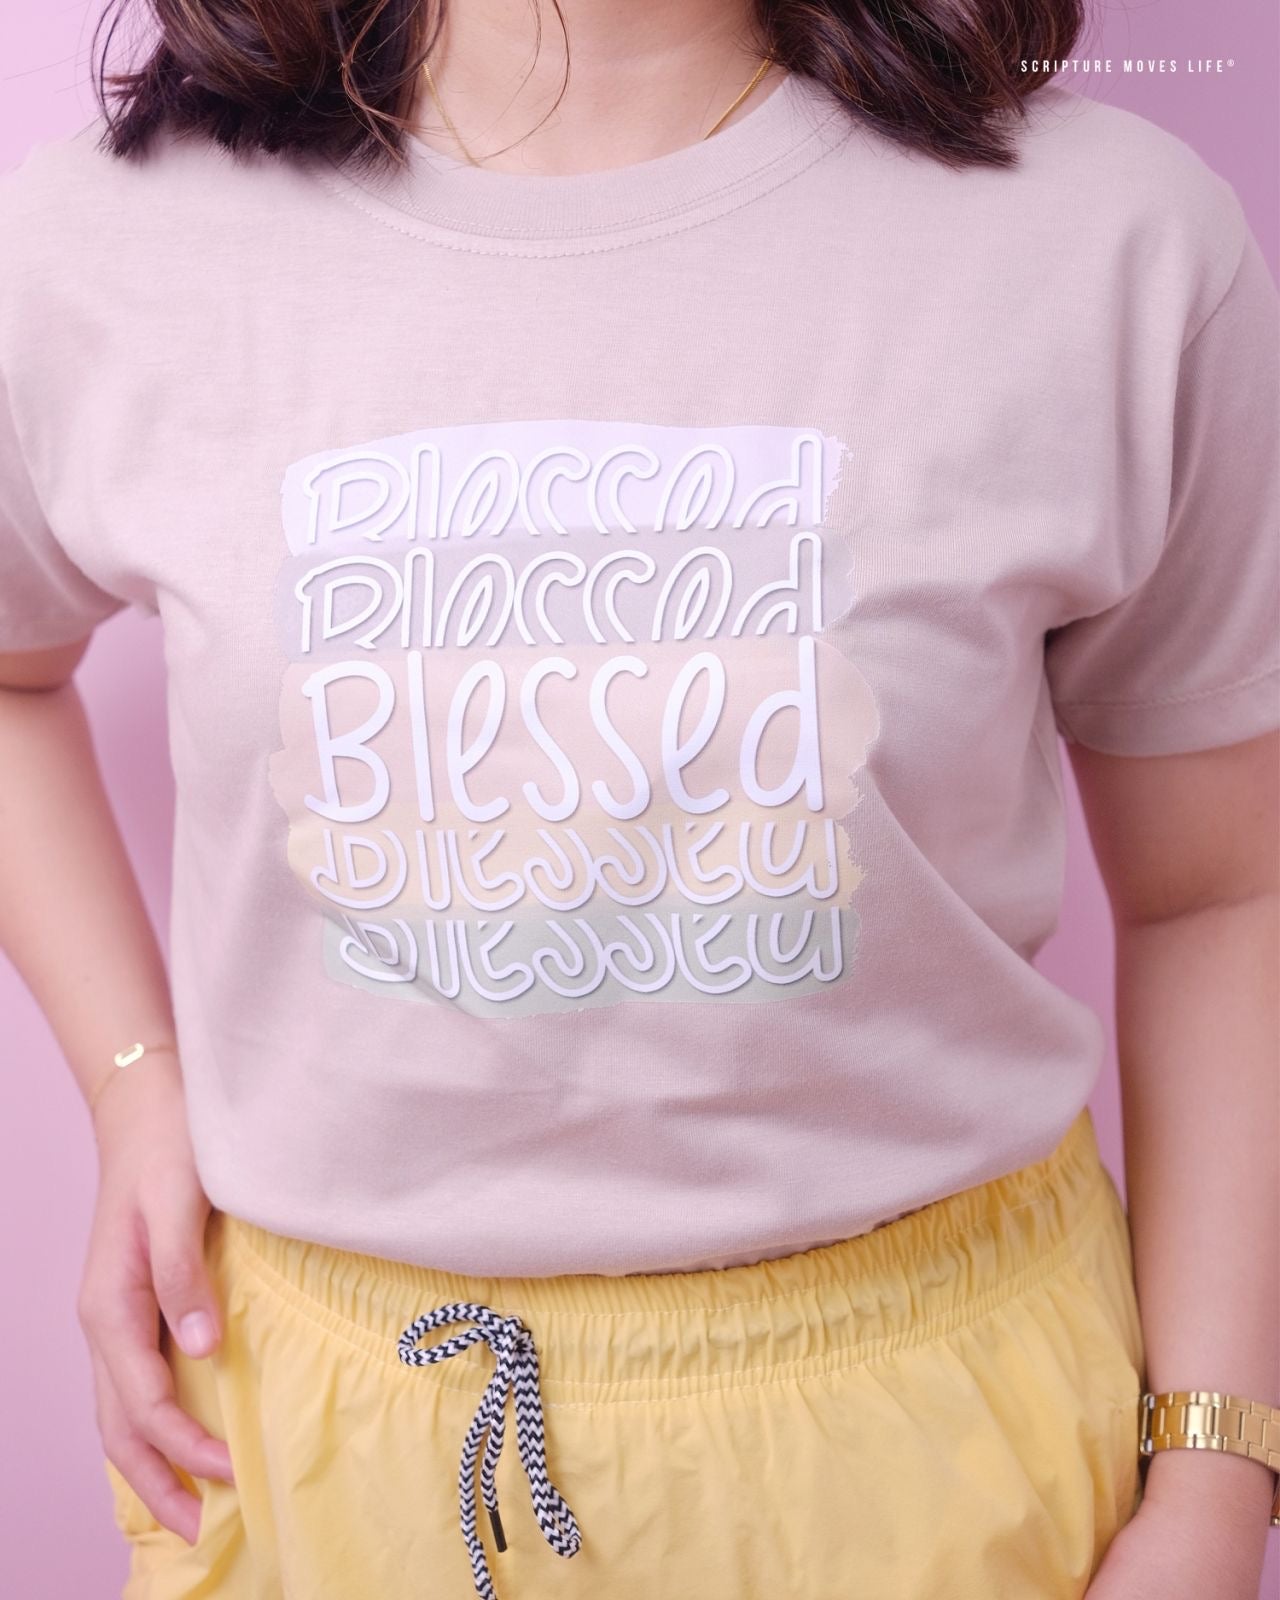 Classic-Blessed Blessed Blessed Blessed Blessed